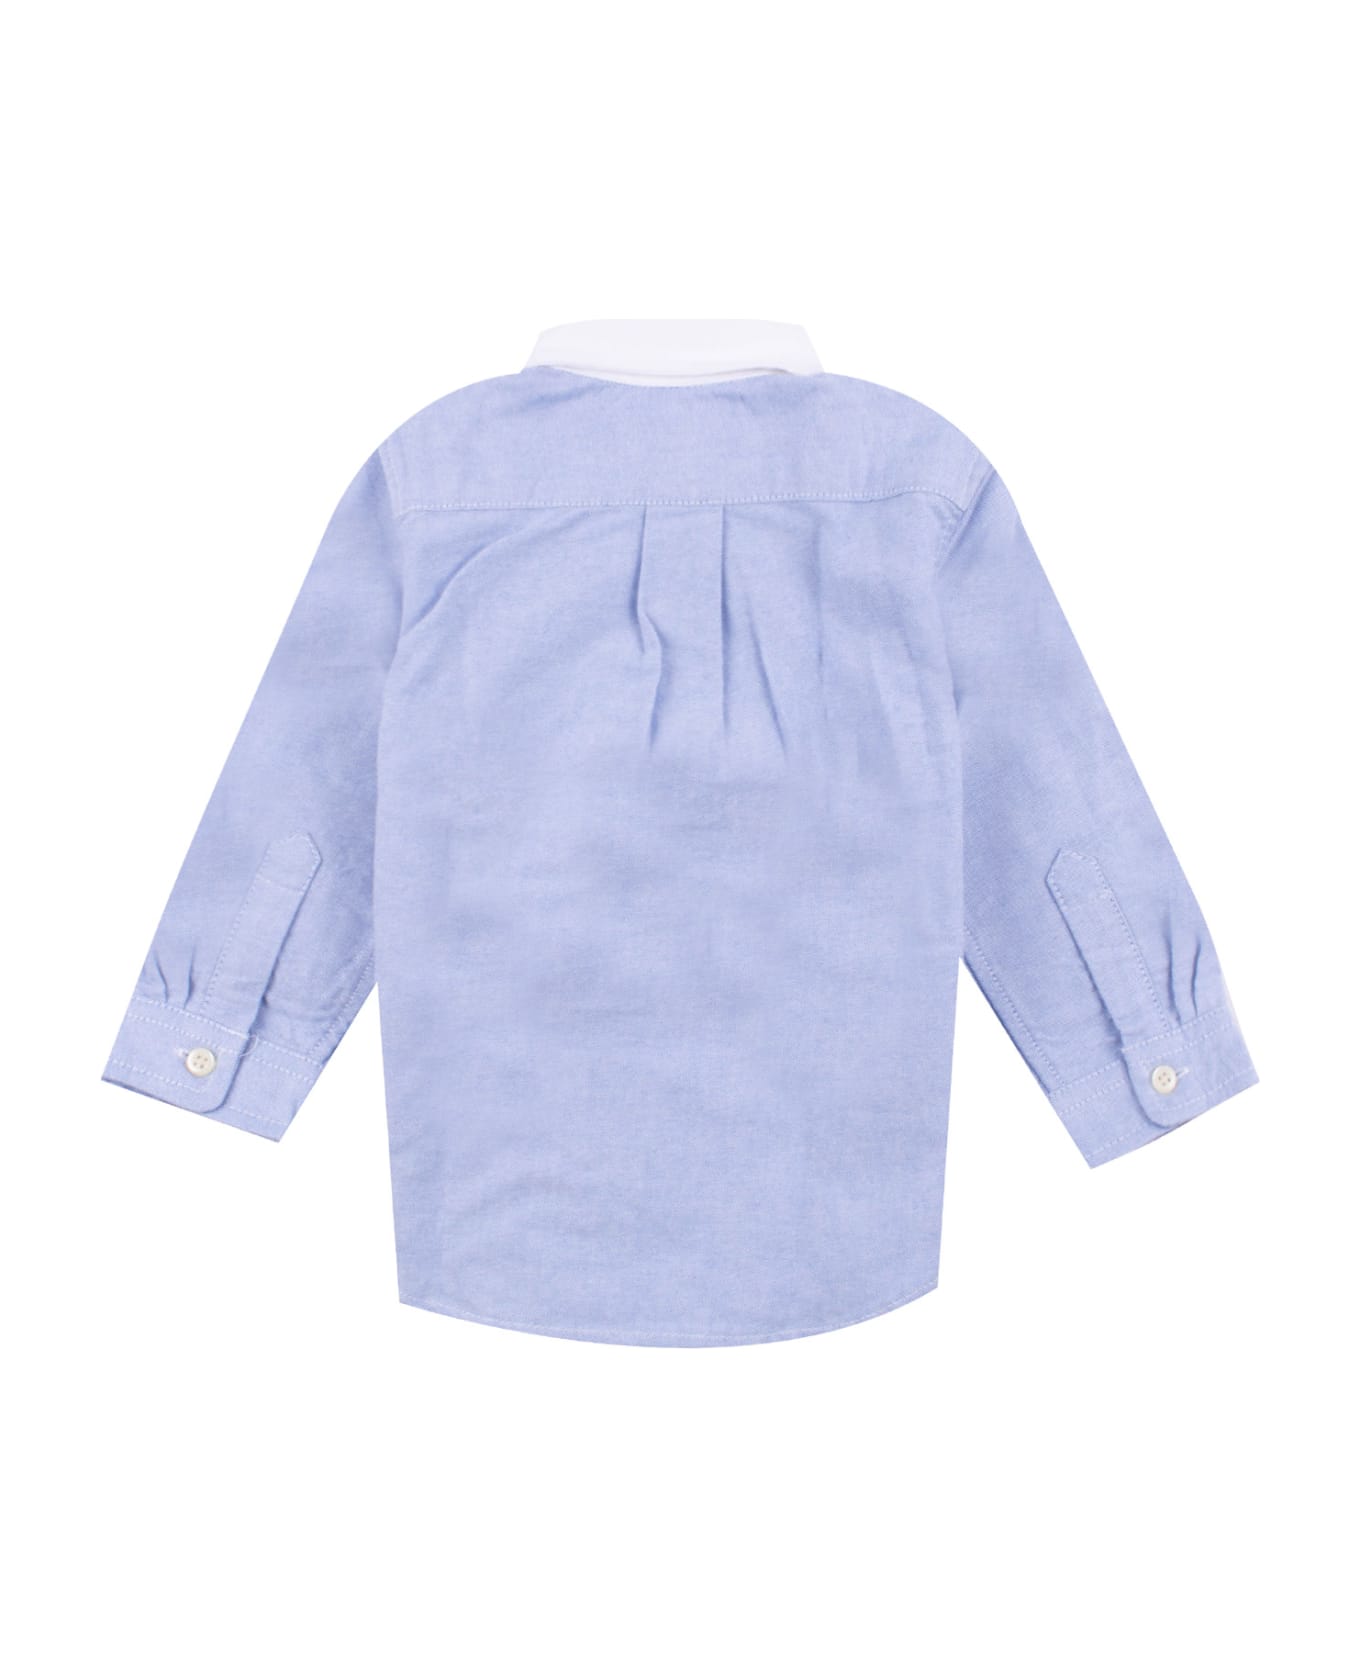 Ralph Lauren Cotton Shirt - Light blue